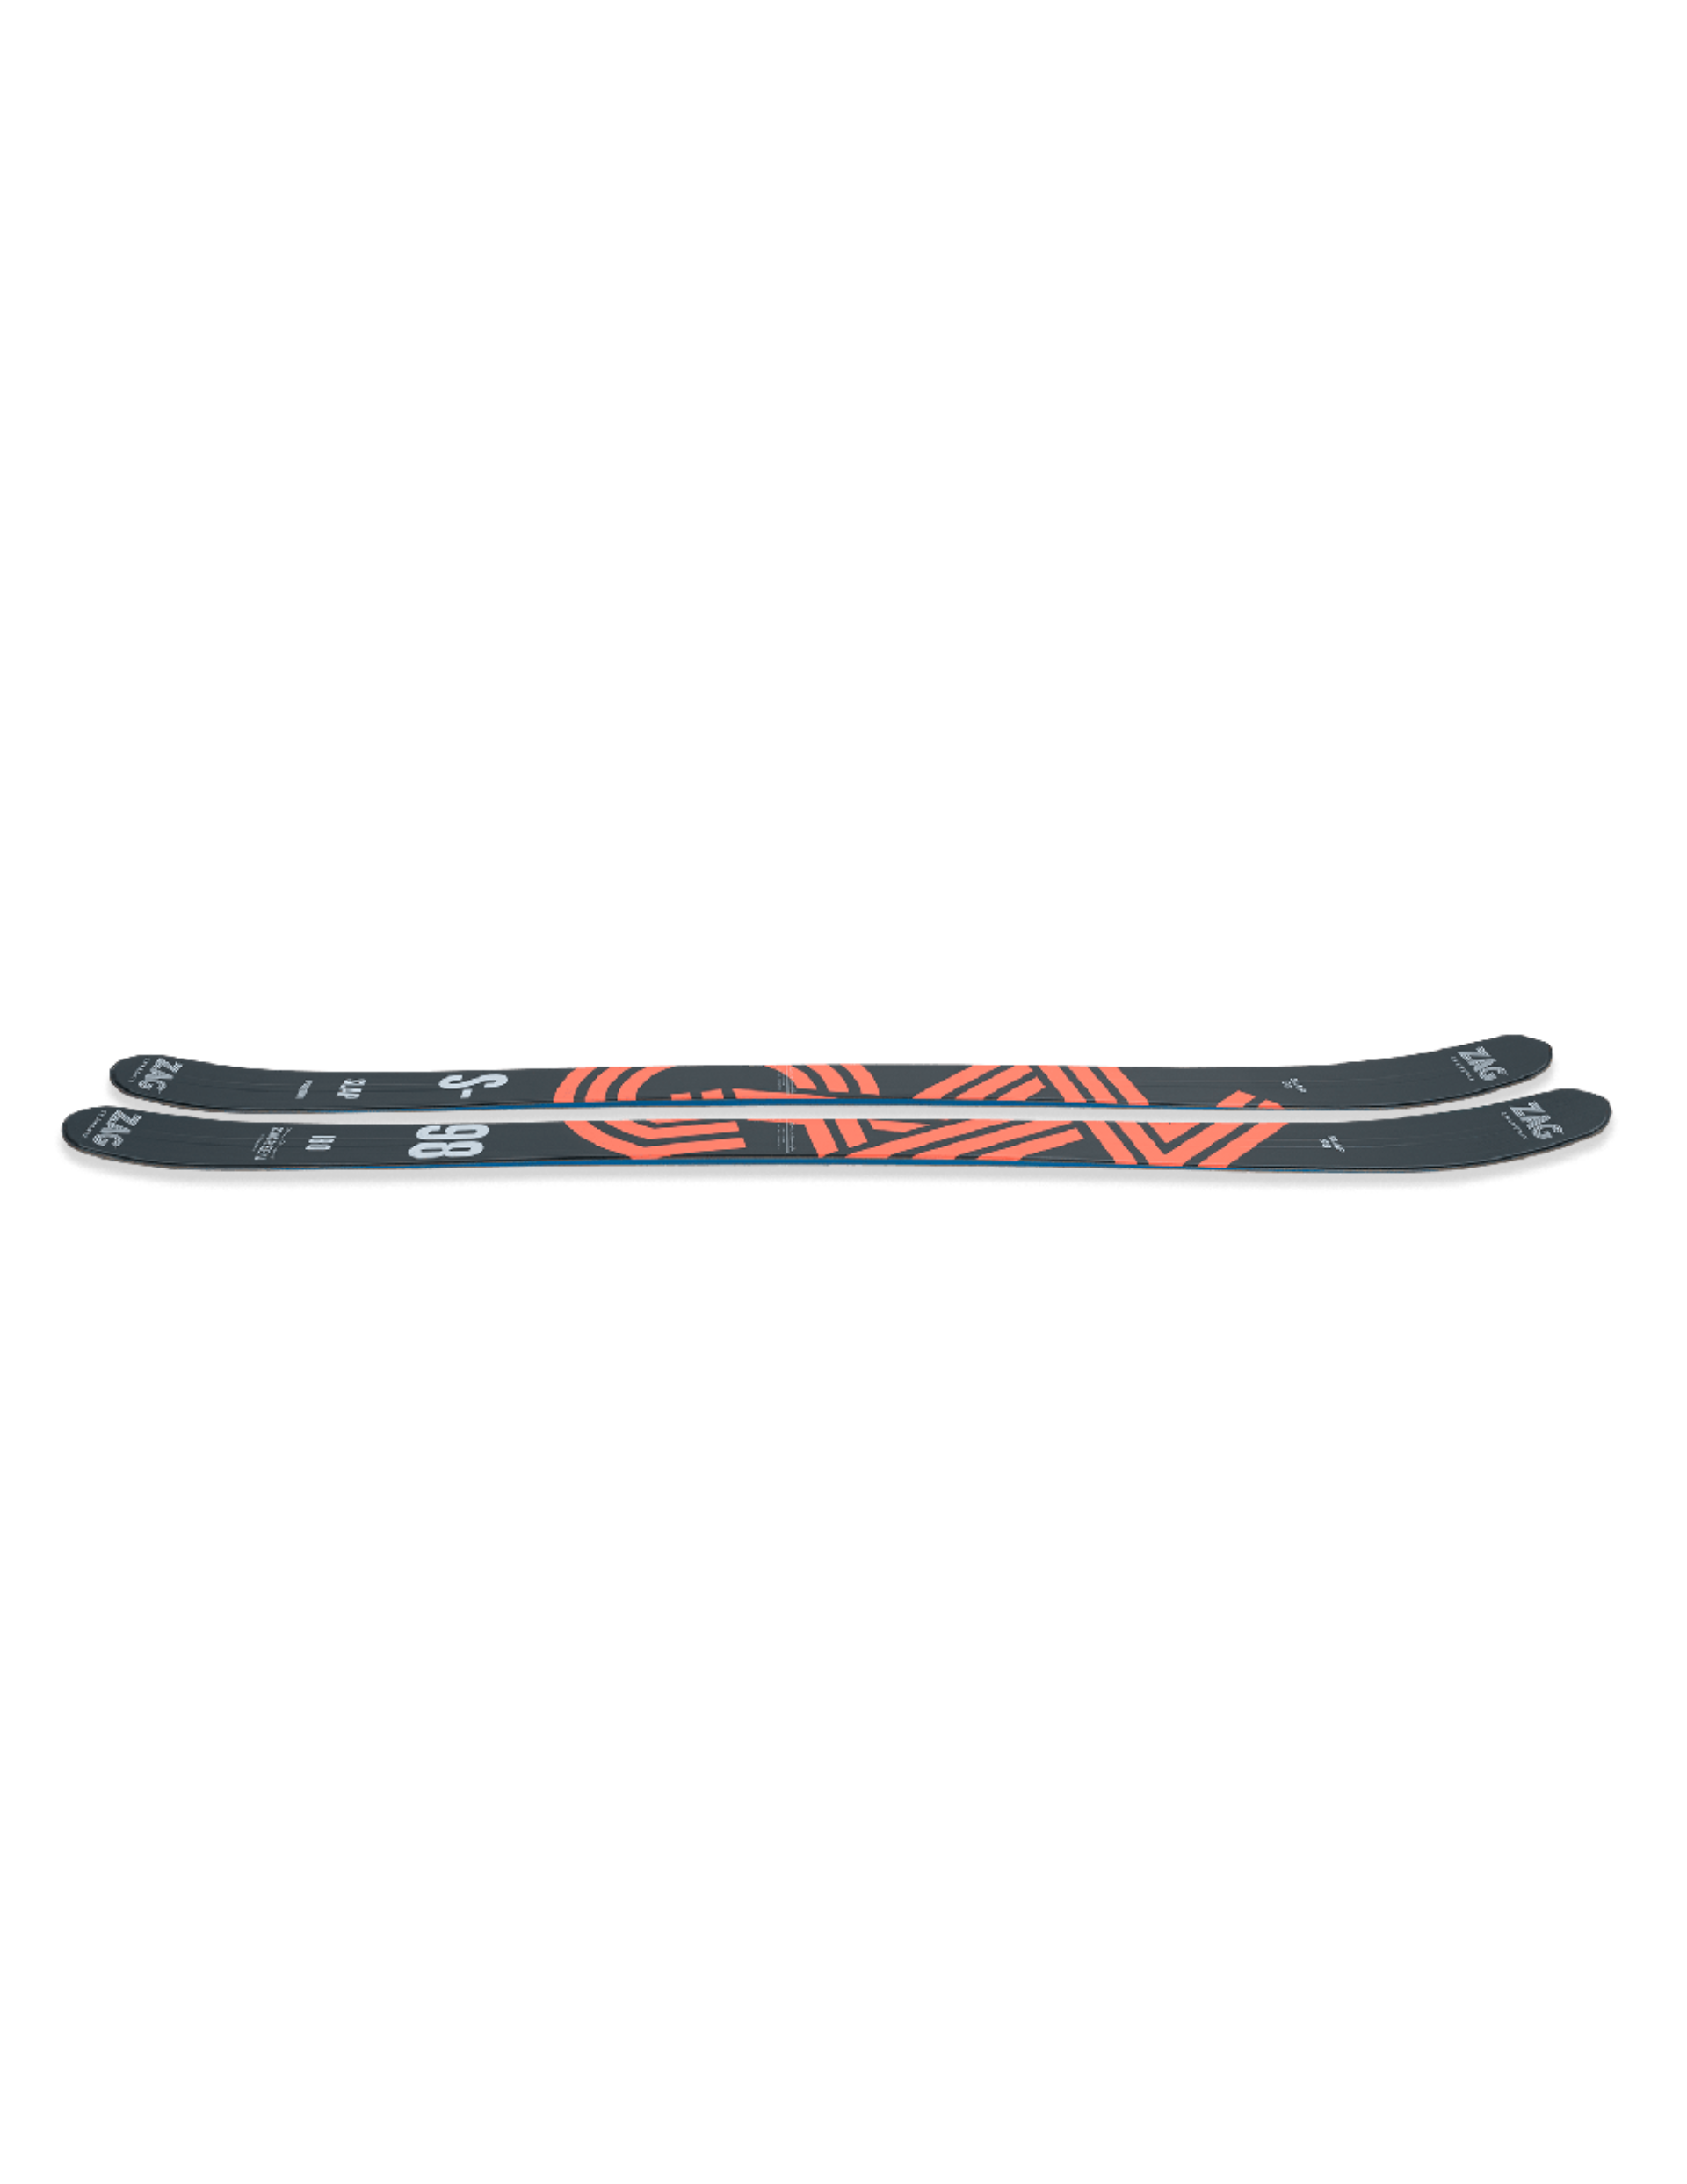 Skis de Rando ZAG Slap 98 : shape en 5 points et rayon moyen